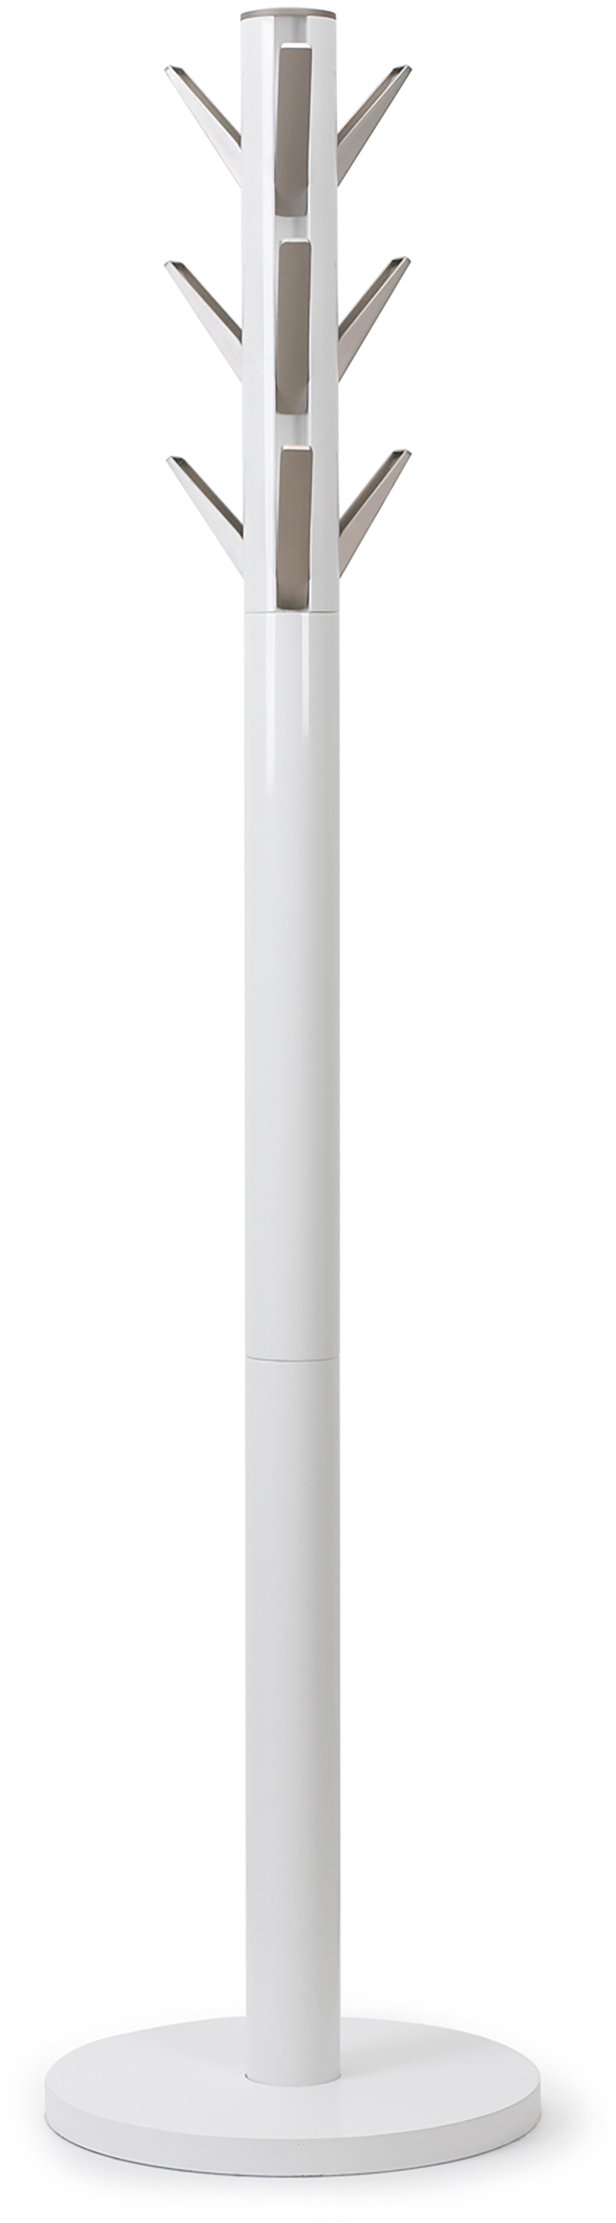 Umbra Flapper naulakko 169cm valkoinen/harmaa